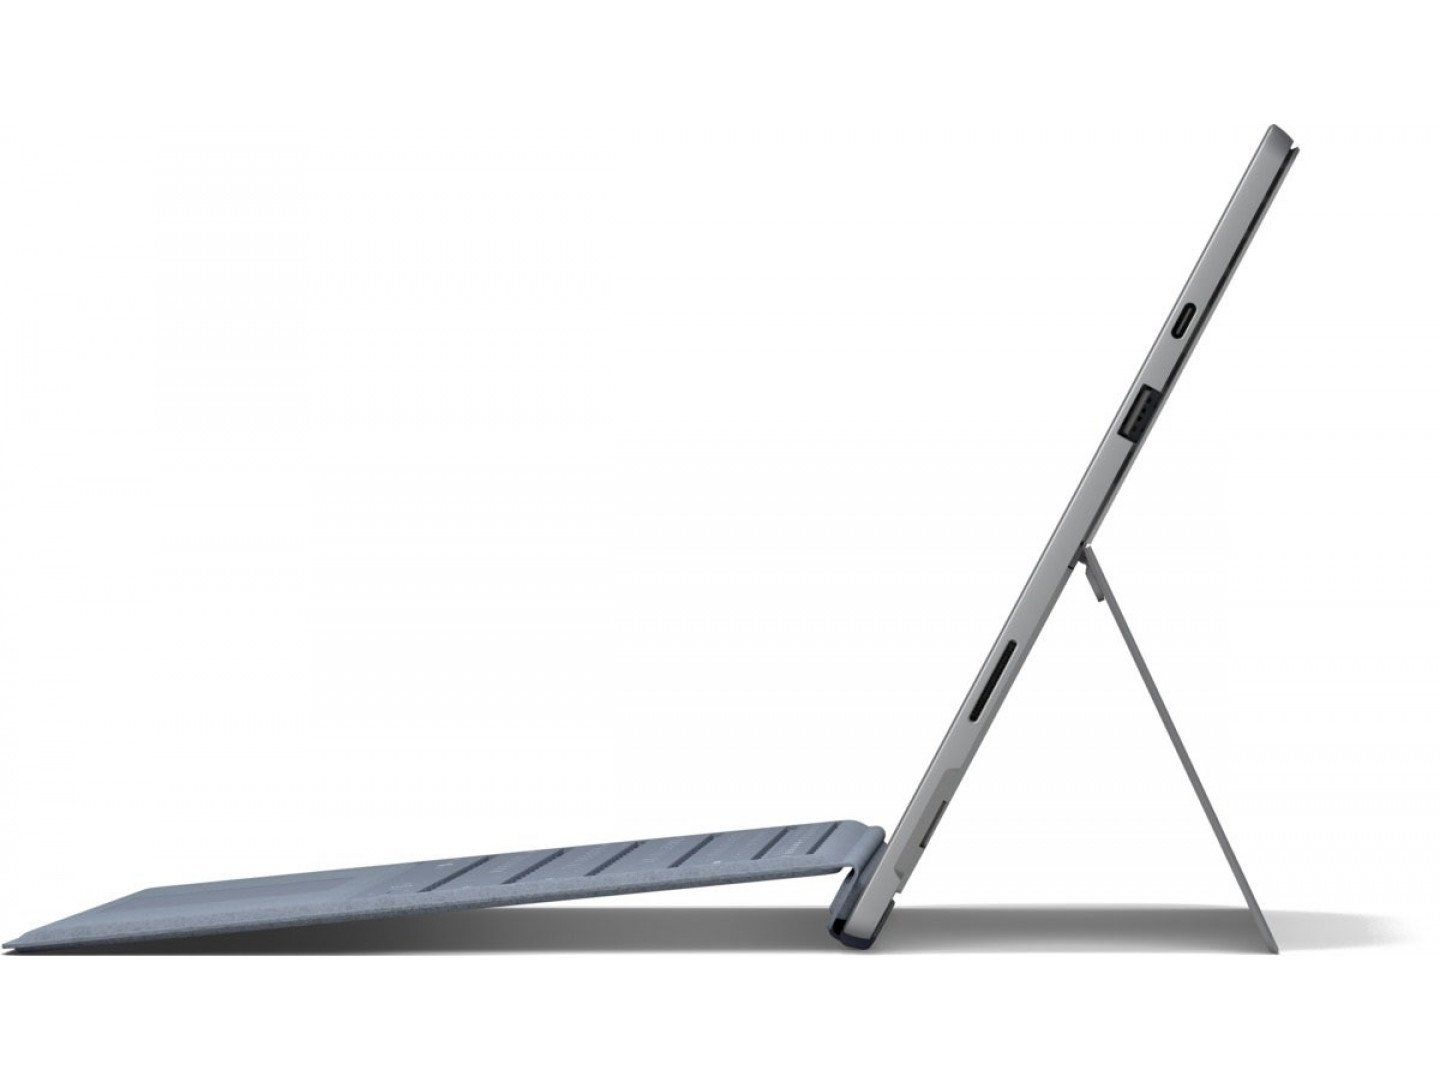 Купить Ноутбук Microsoft Surface Pro 7 Platinum (VNX-00003) - ITMag